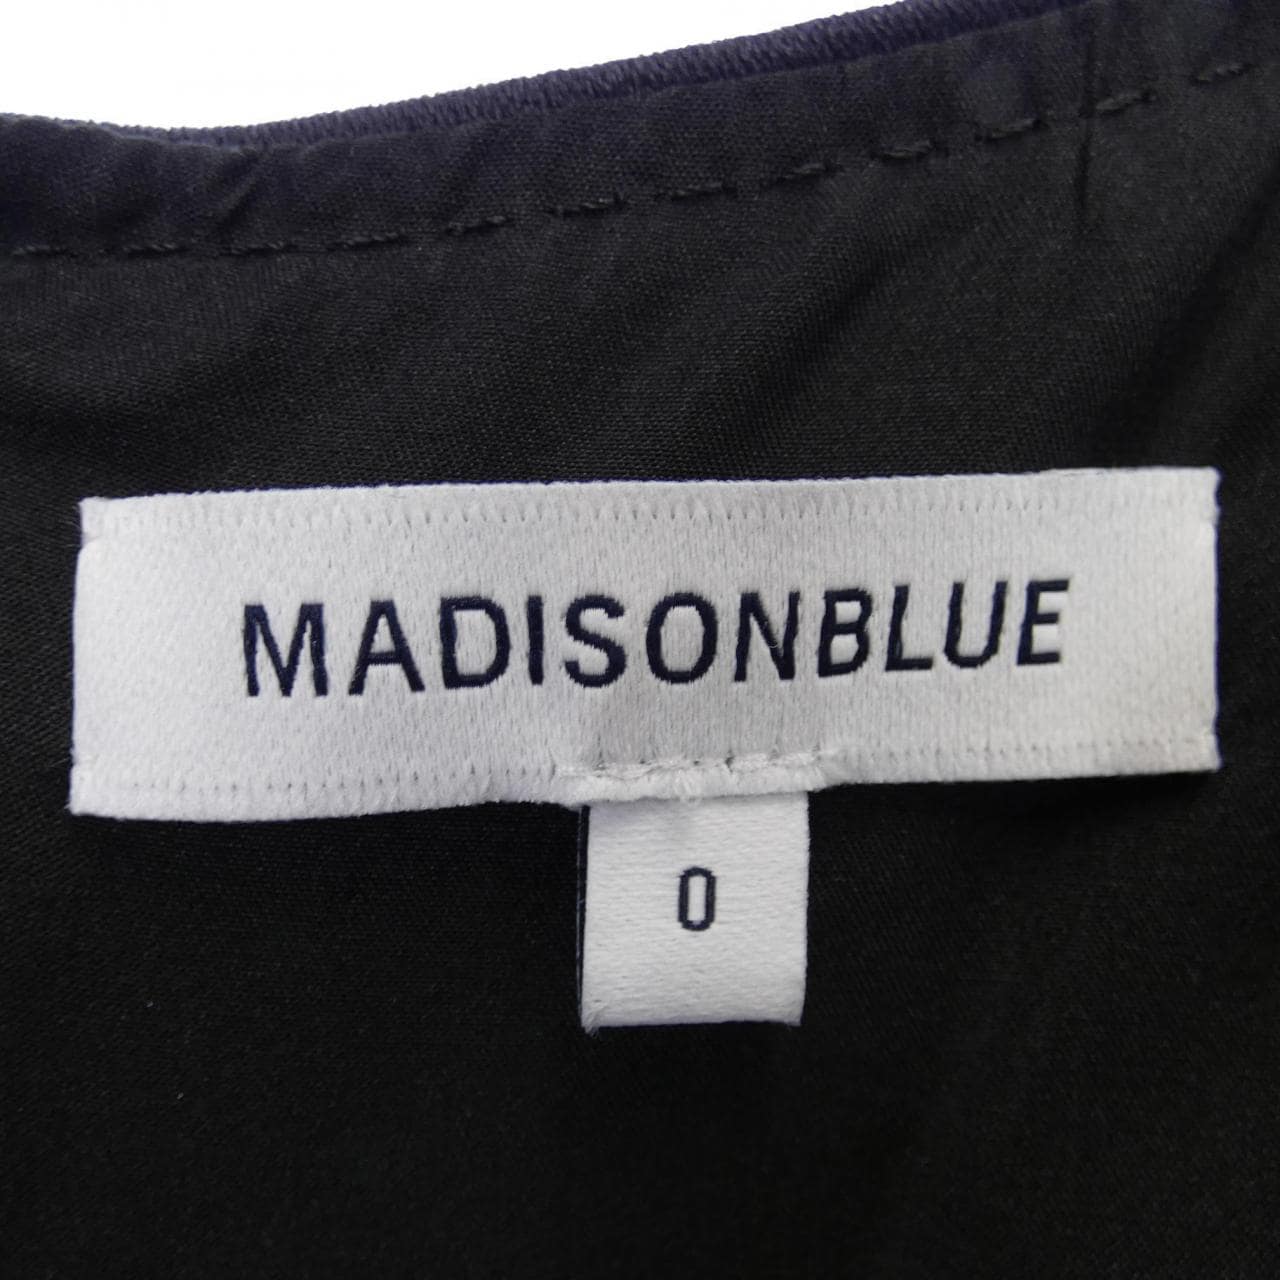 Madison Blue MADISON BLUE One Piece